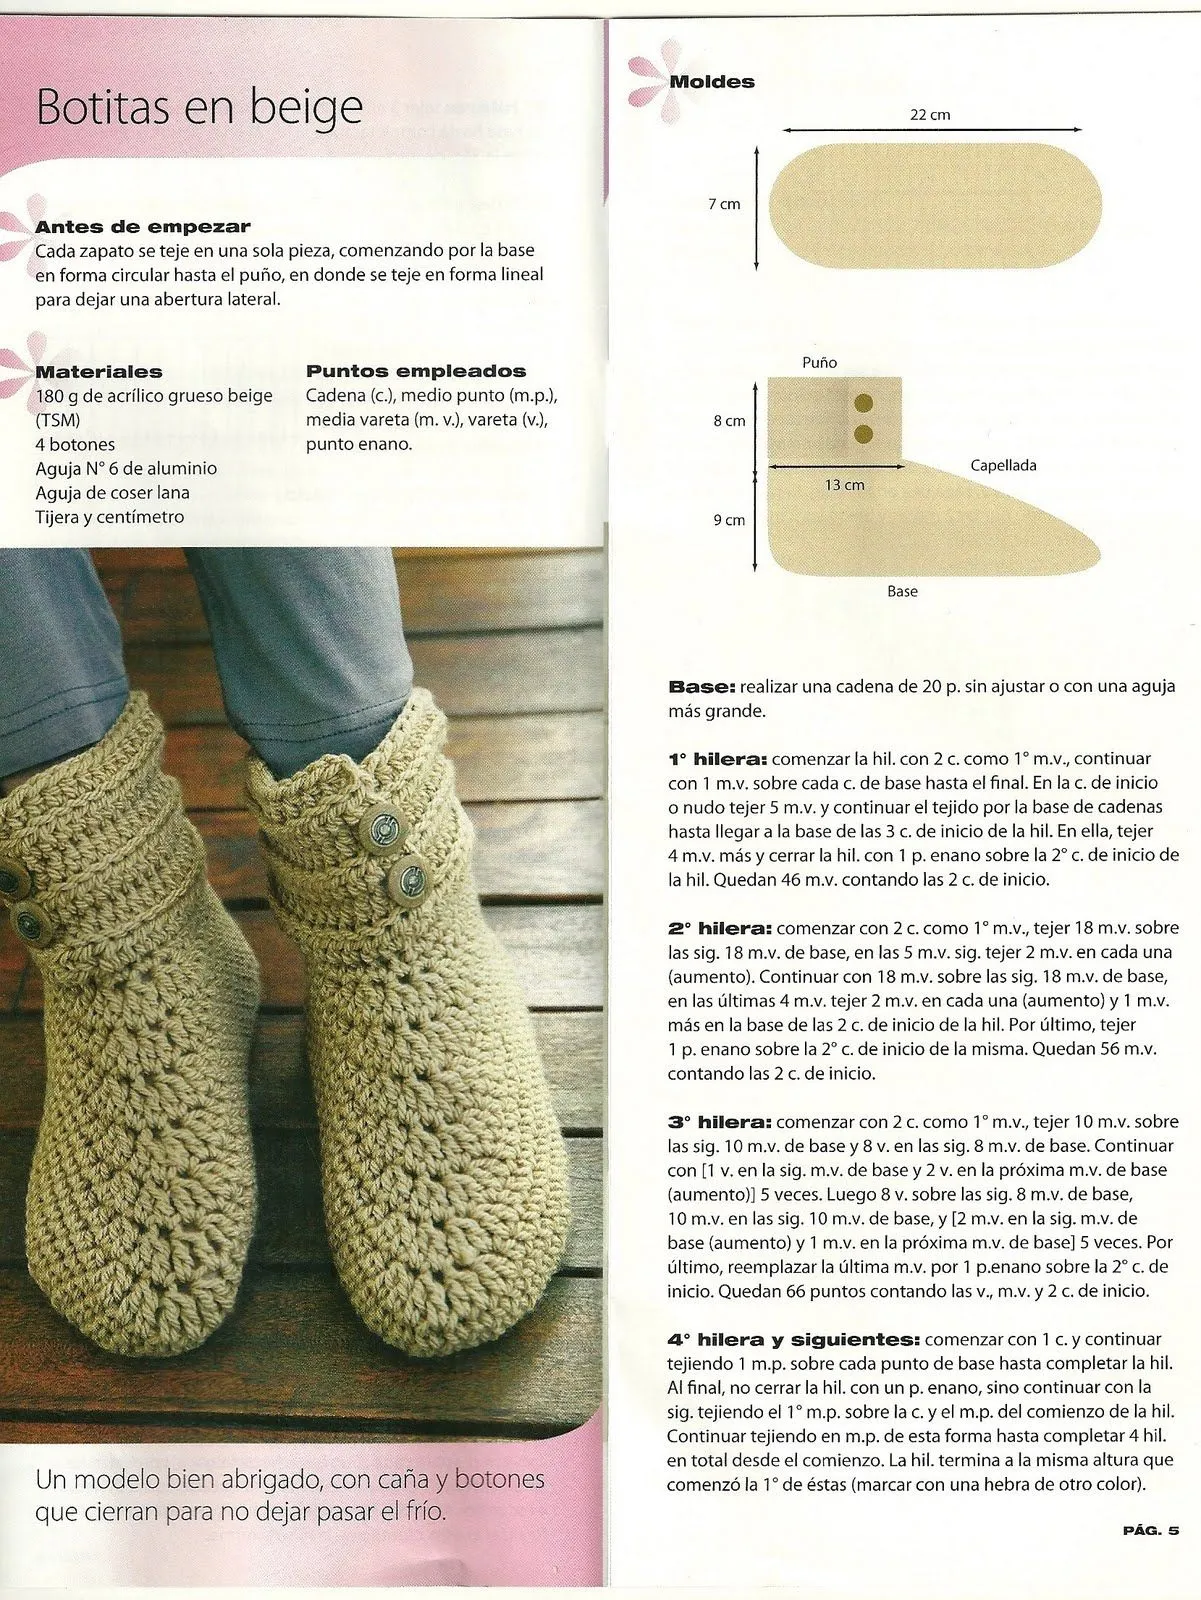 Patrones de tejidos a crochet en botas - Imagui